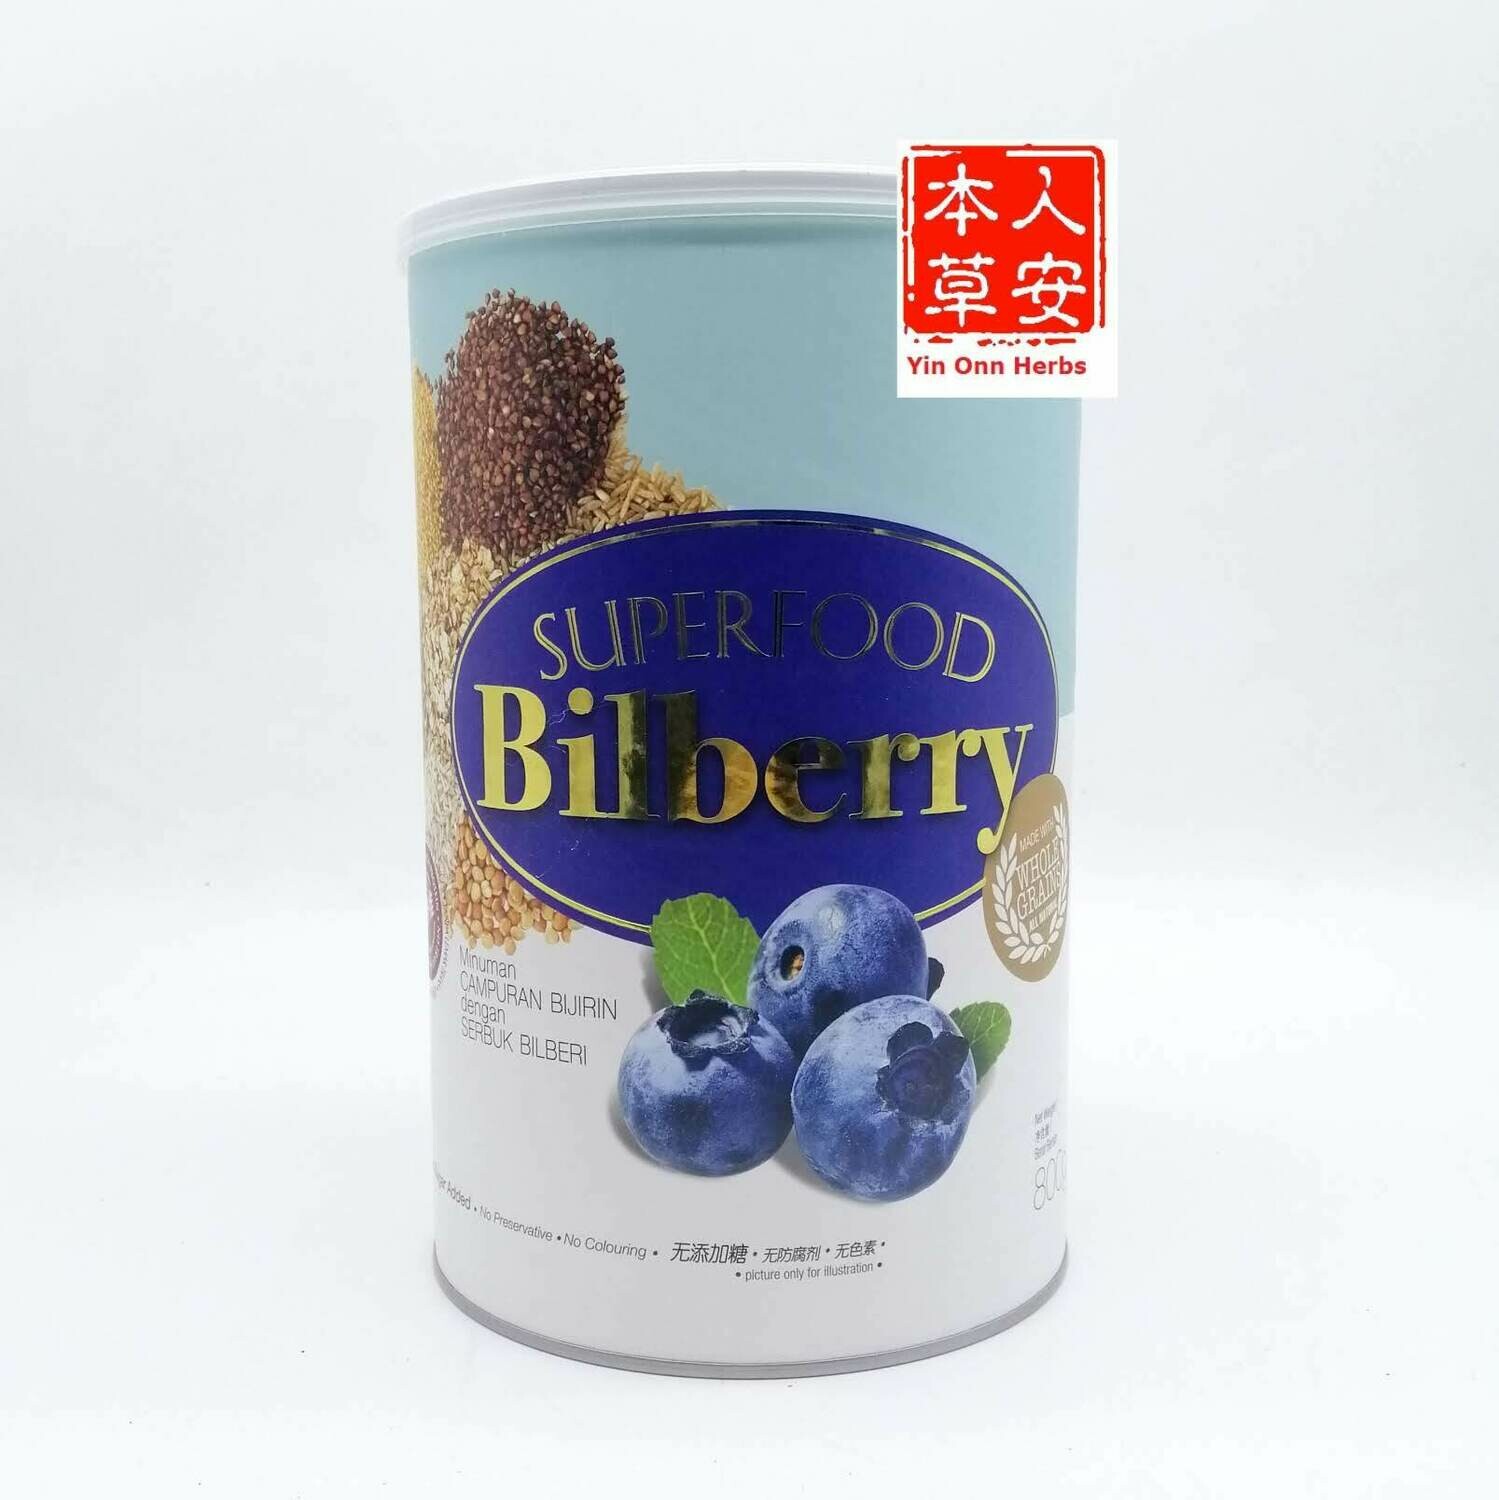 黑王超级蓝莓粉 800gm Hei Hwang SuperFood Bilberry